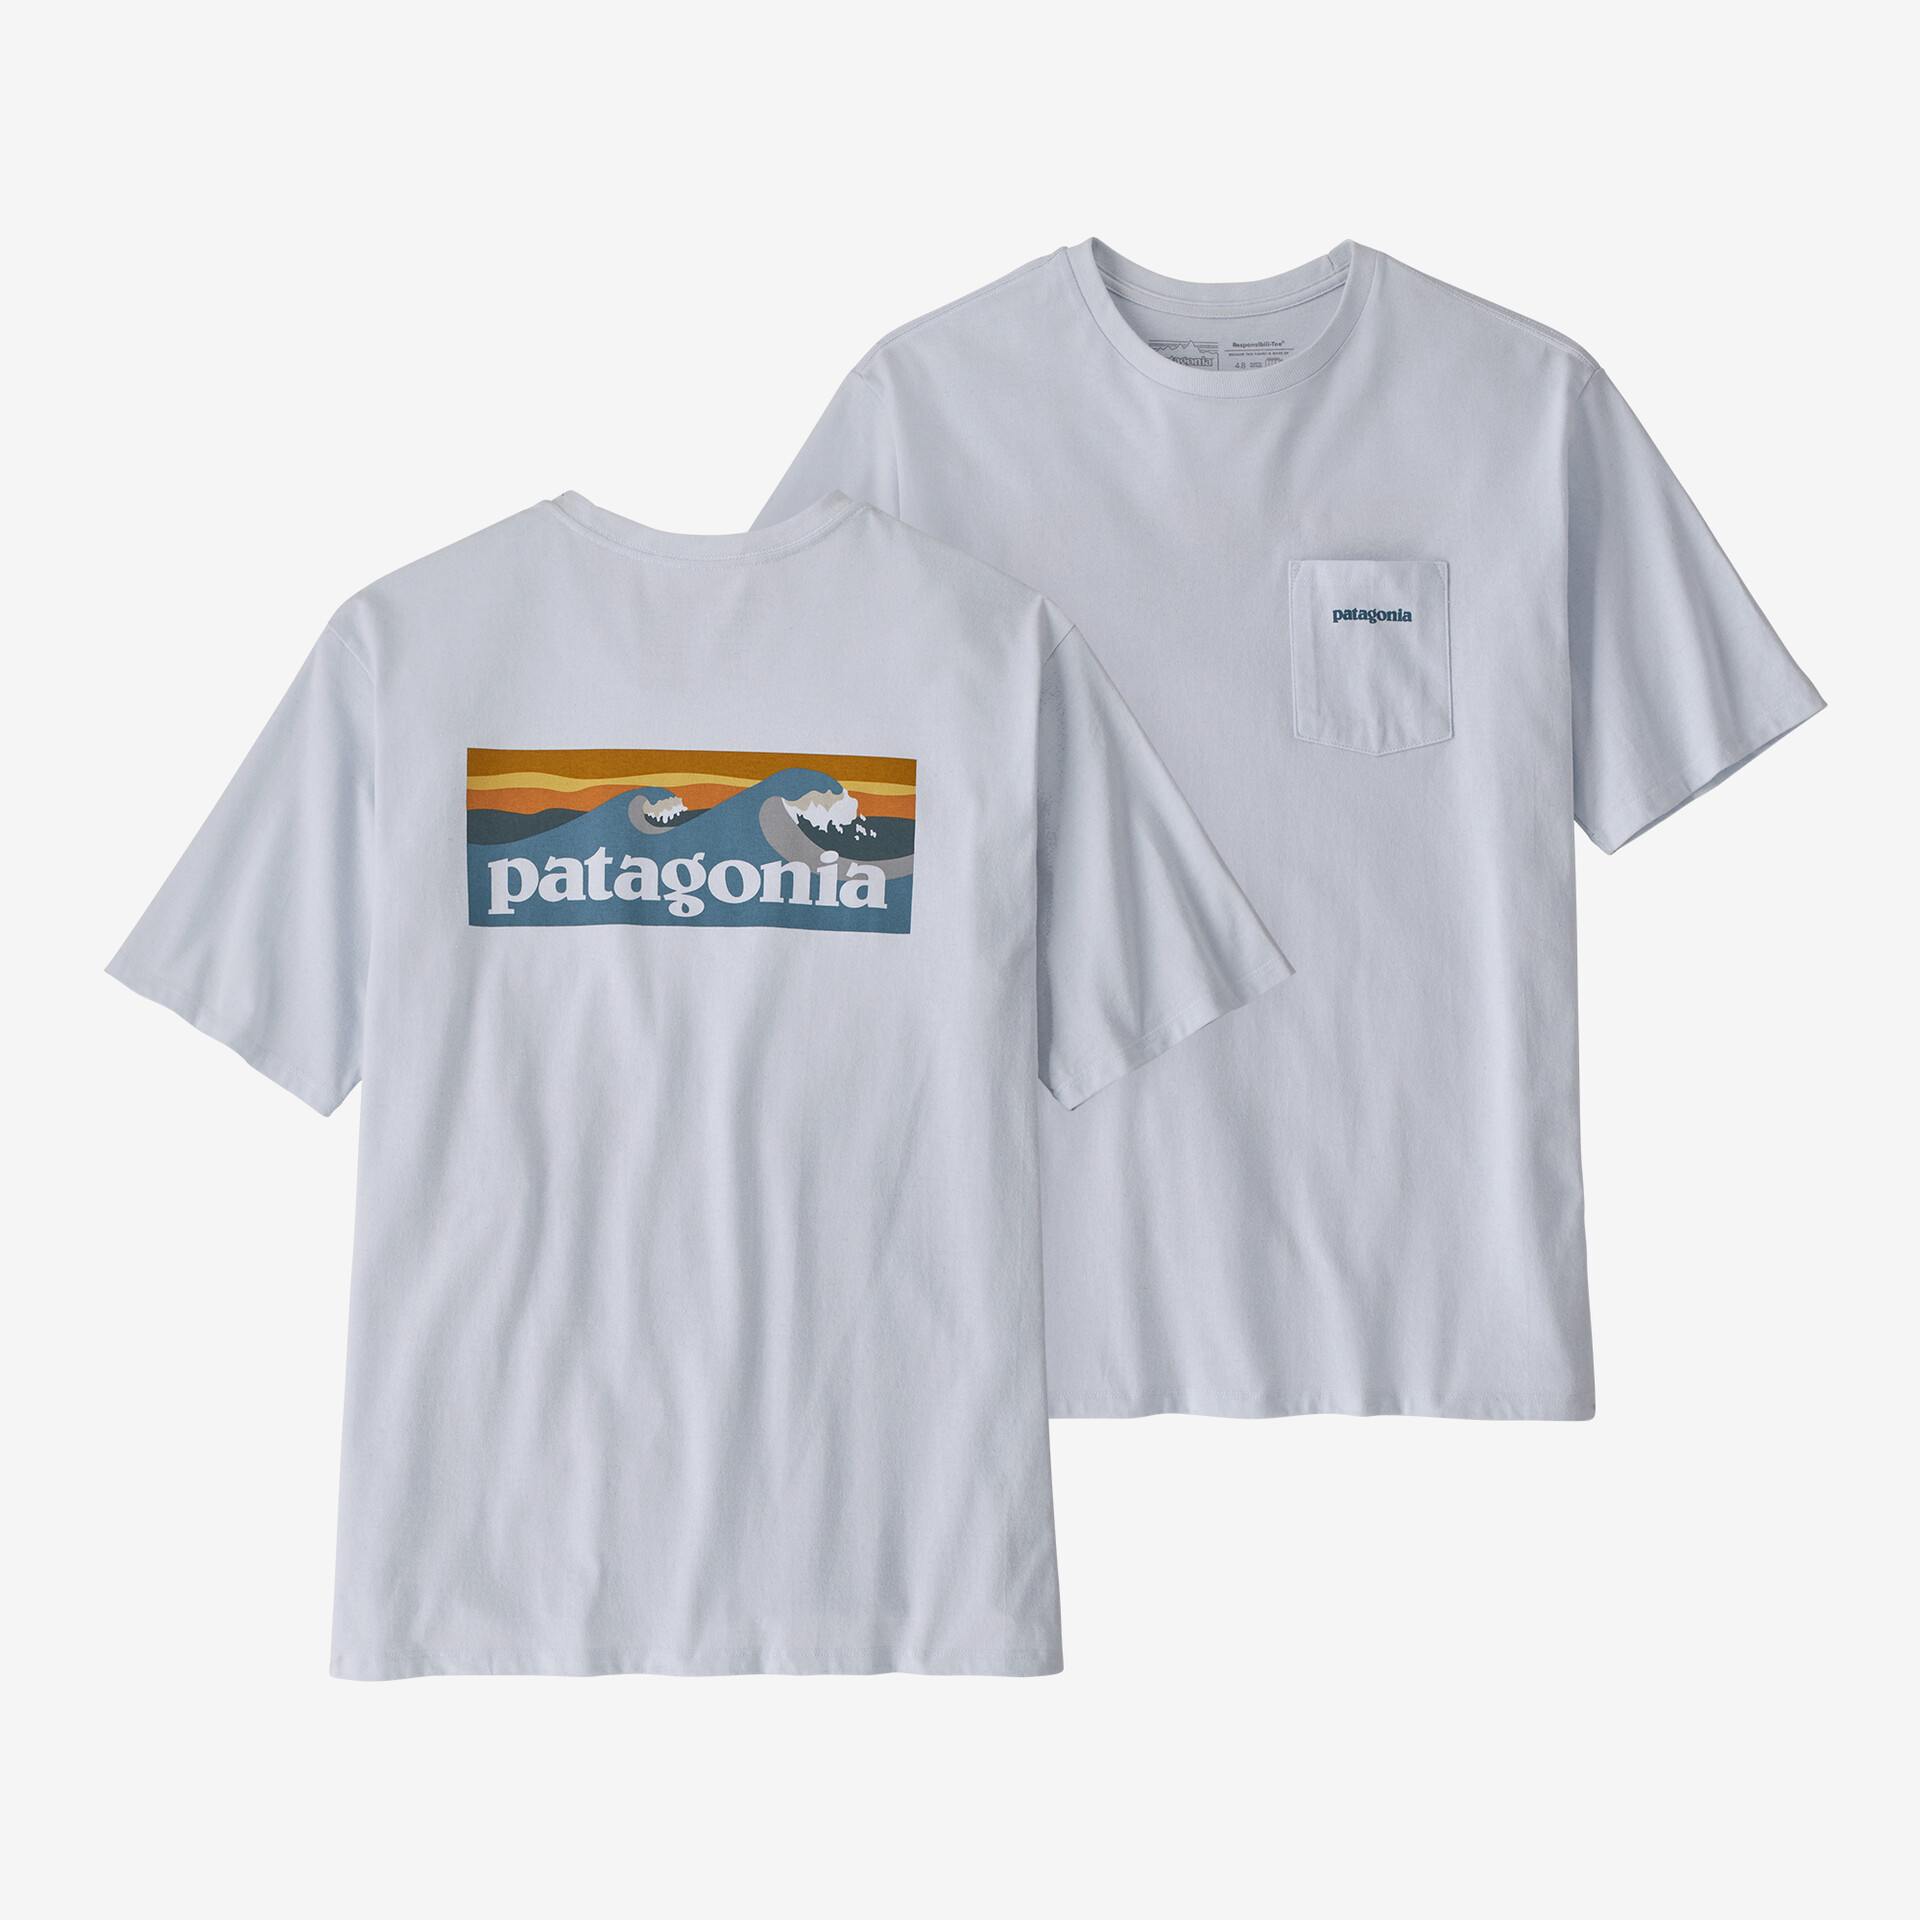 Мужская футболка с логотипом и карманом Responsibili Patagonia, белый мужская ответственная футболка с логотипом и карманом patagonia черный